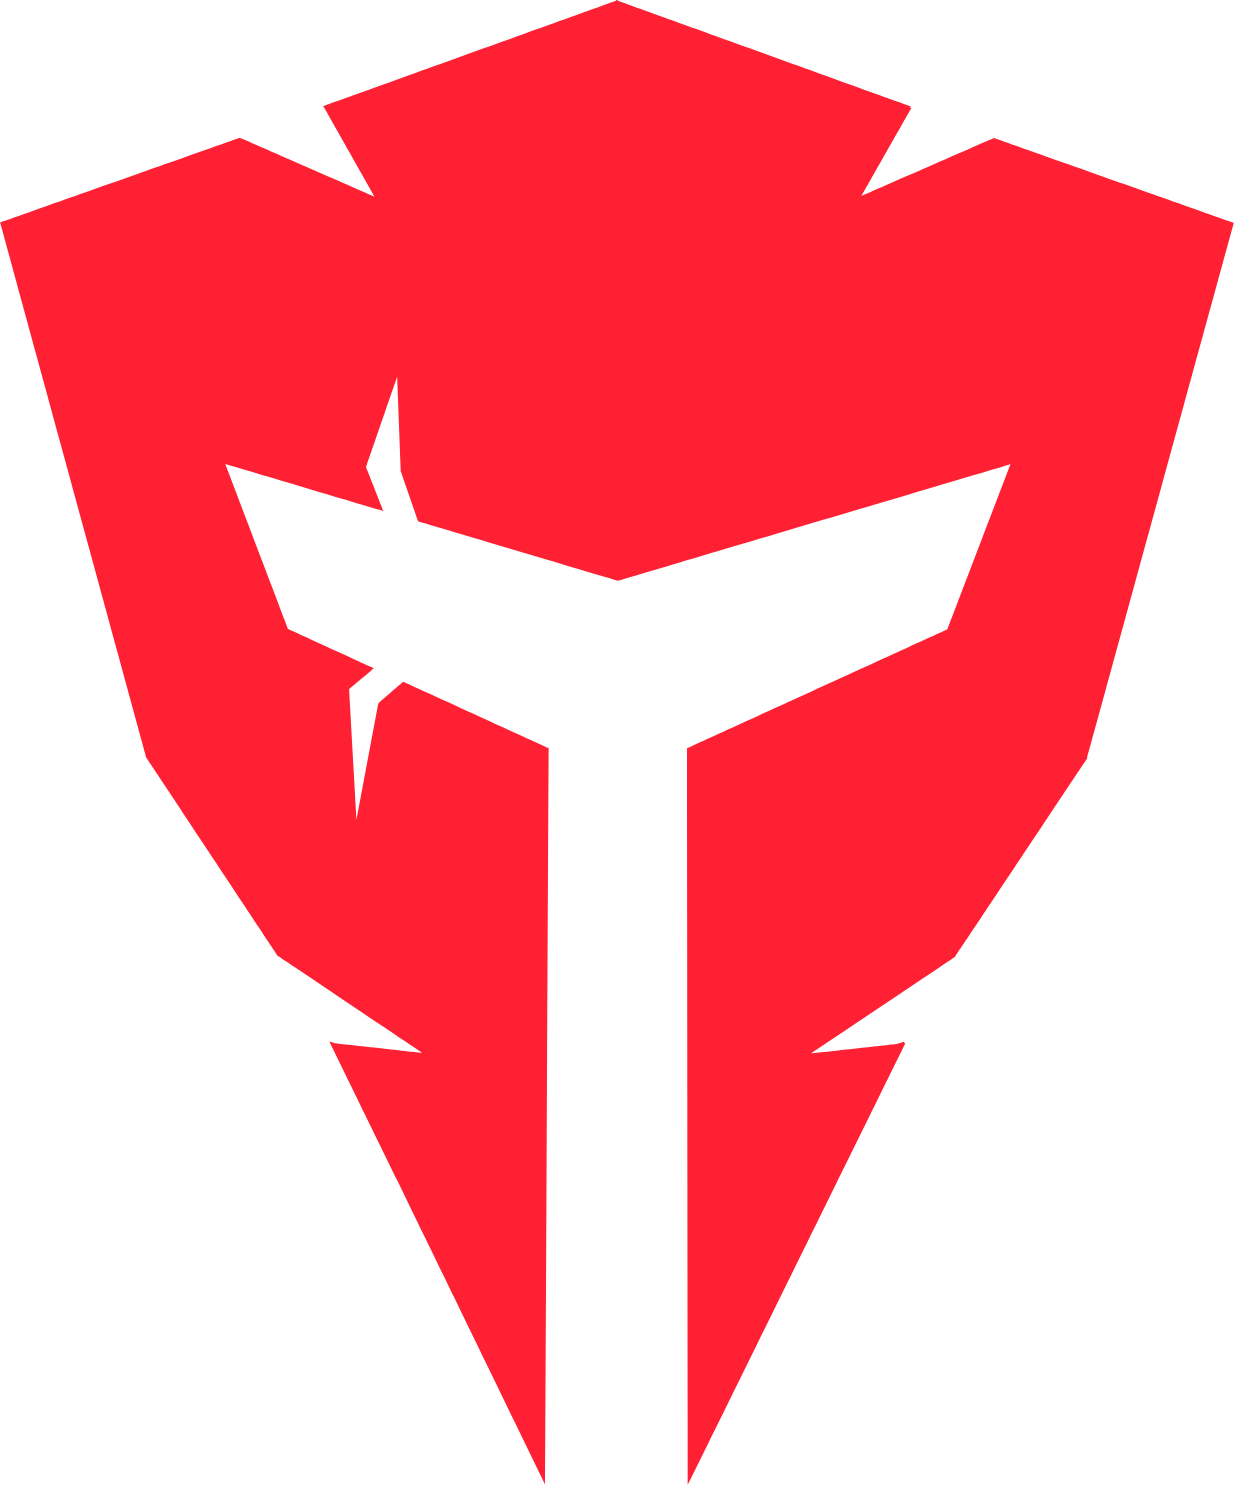 LeetDesk est le sponsor officiel de l'équipe esports Angry Titans